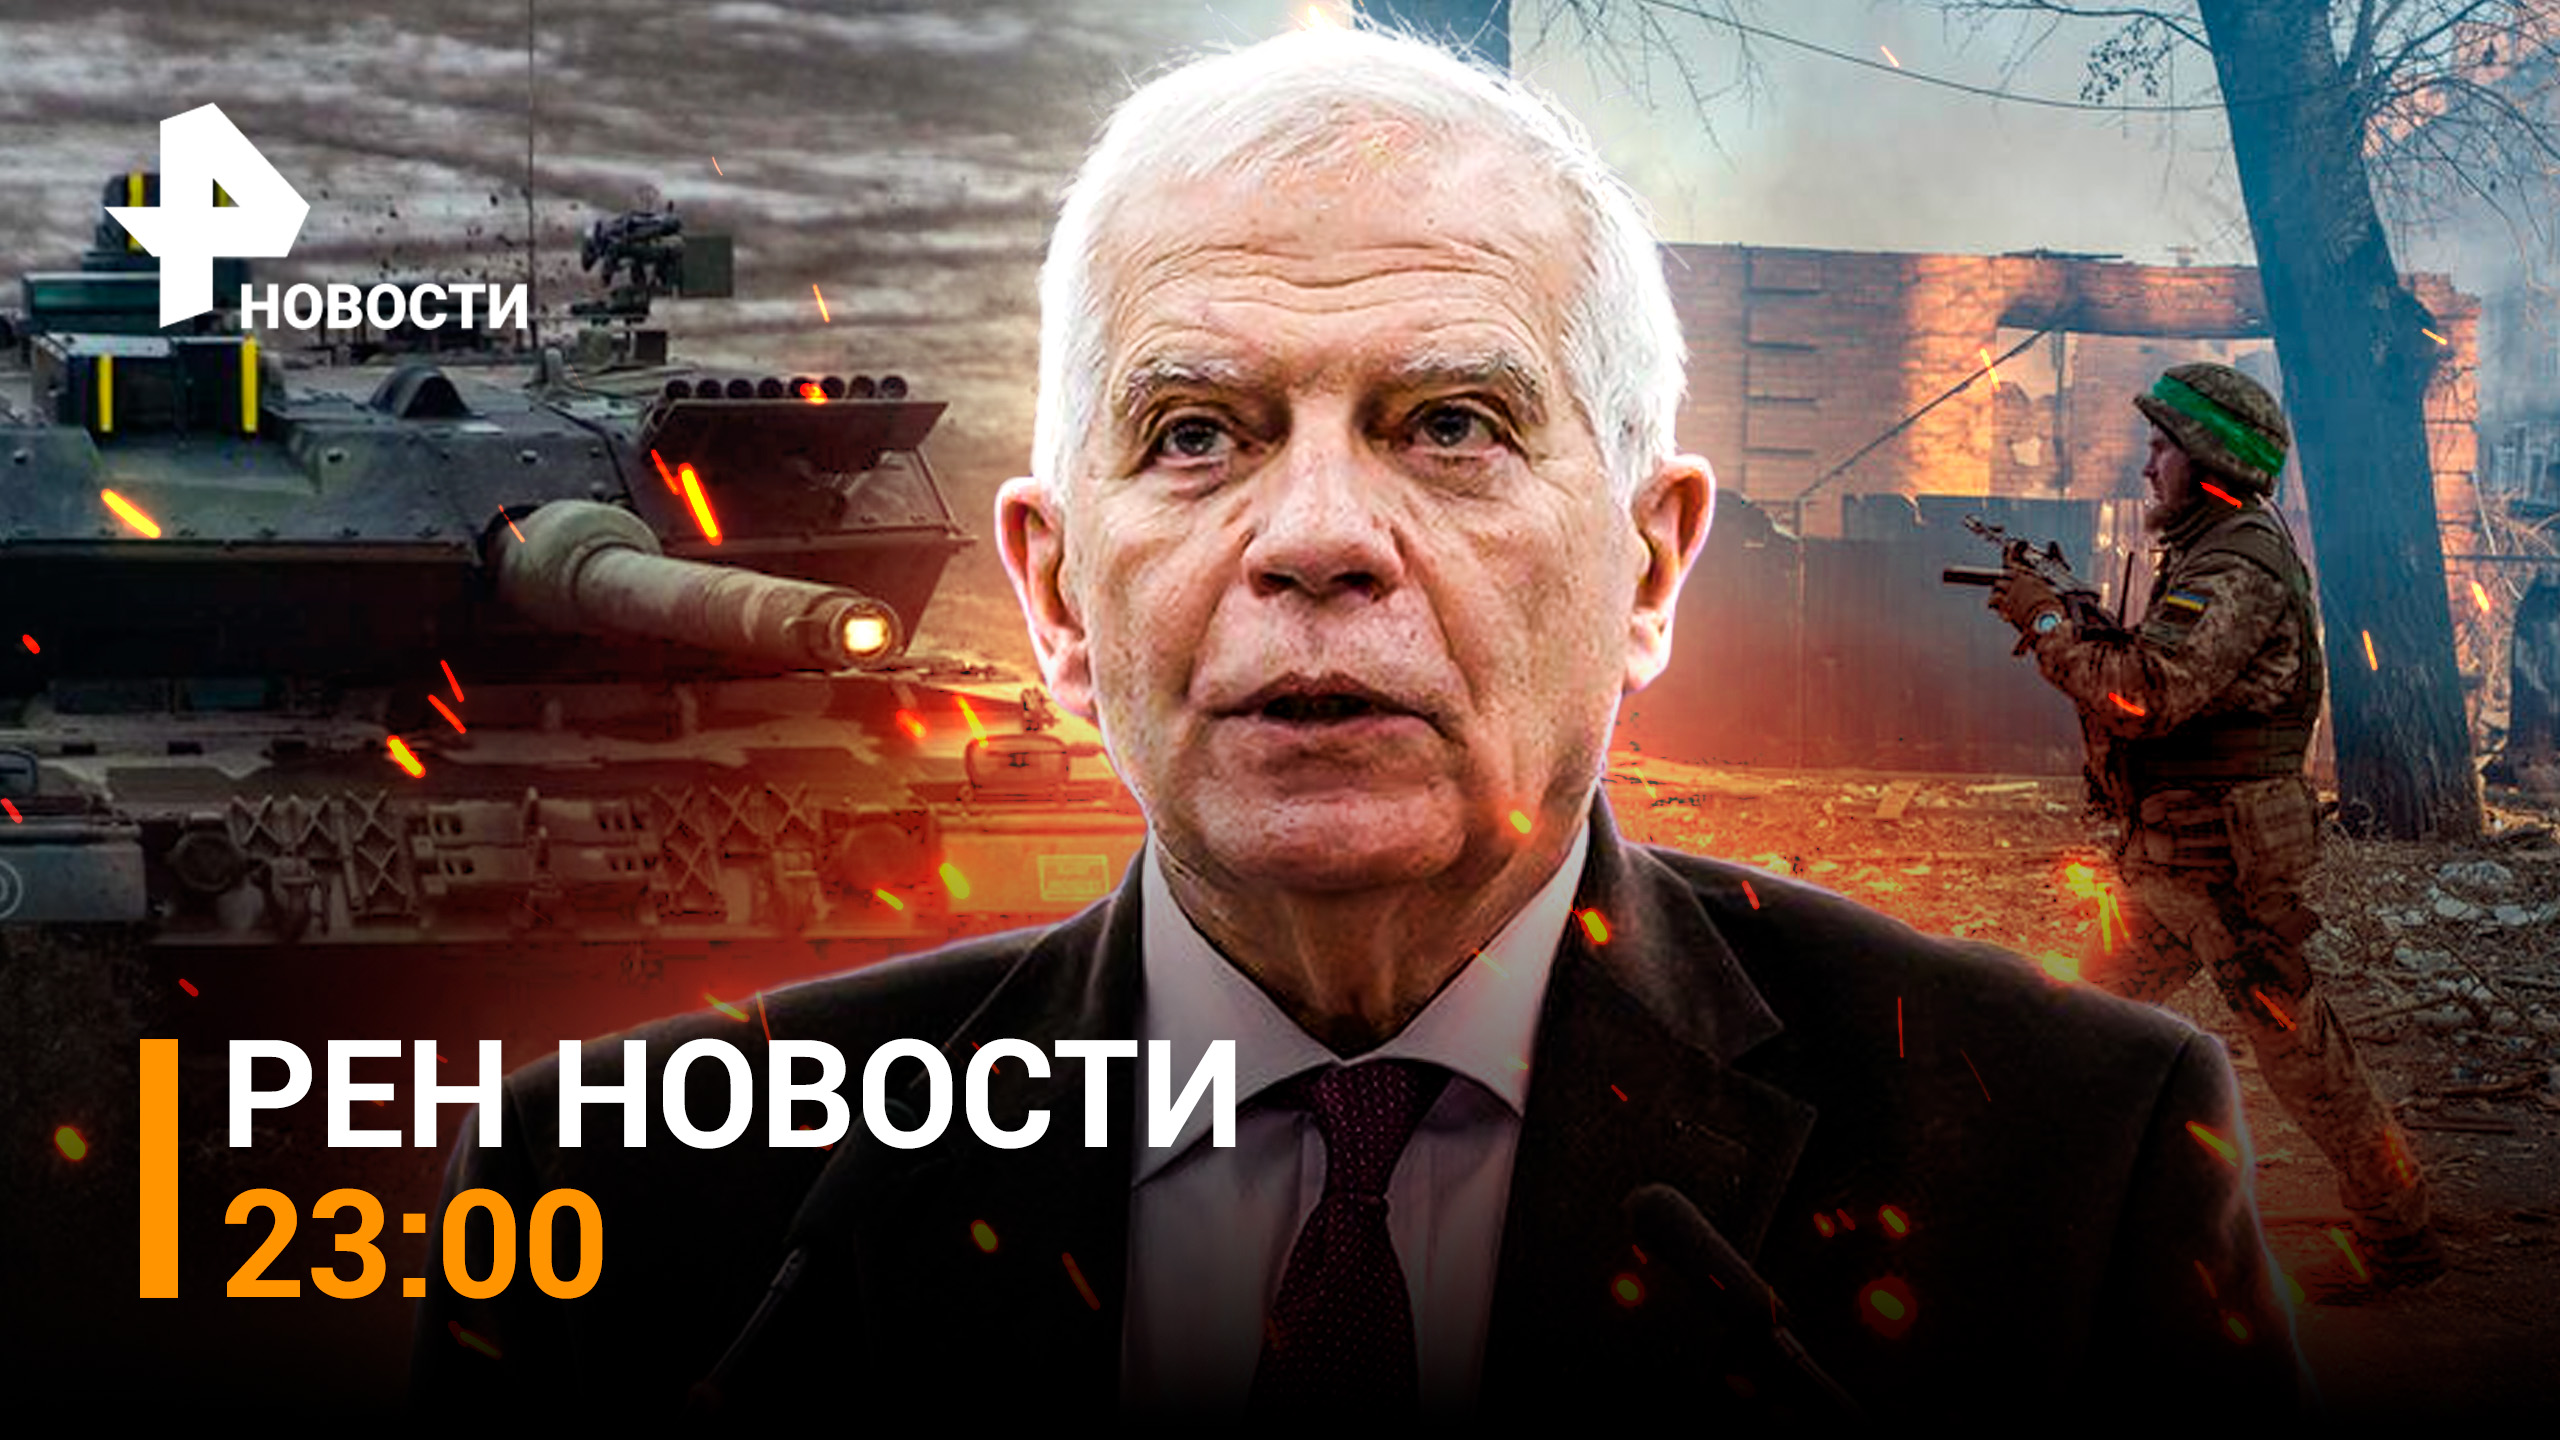 ВСУ сдают Артемовск, танки НАТО не доедут до Украины / РЕН Новости 23:00, 15.02